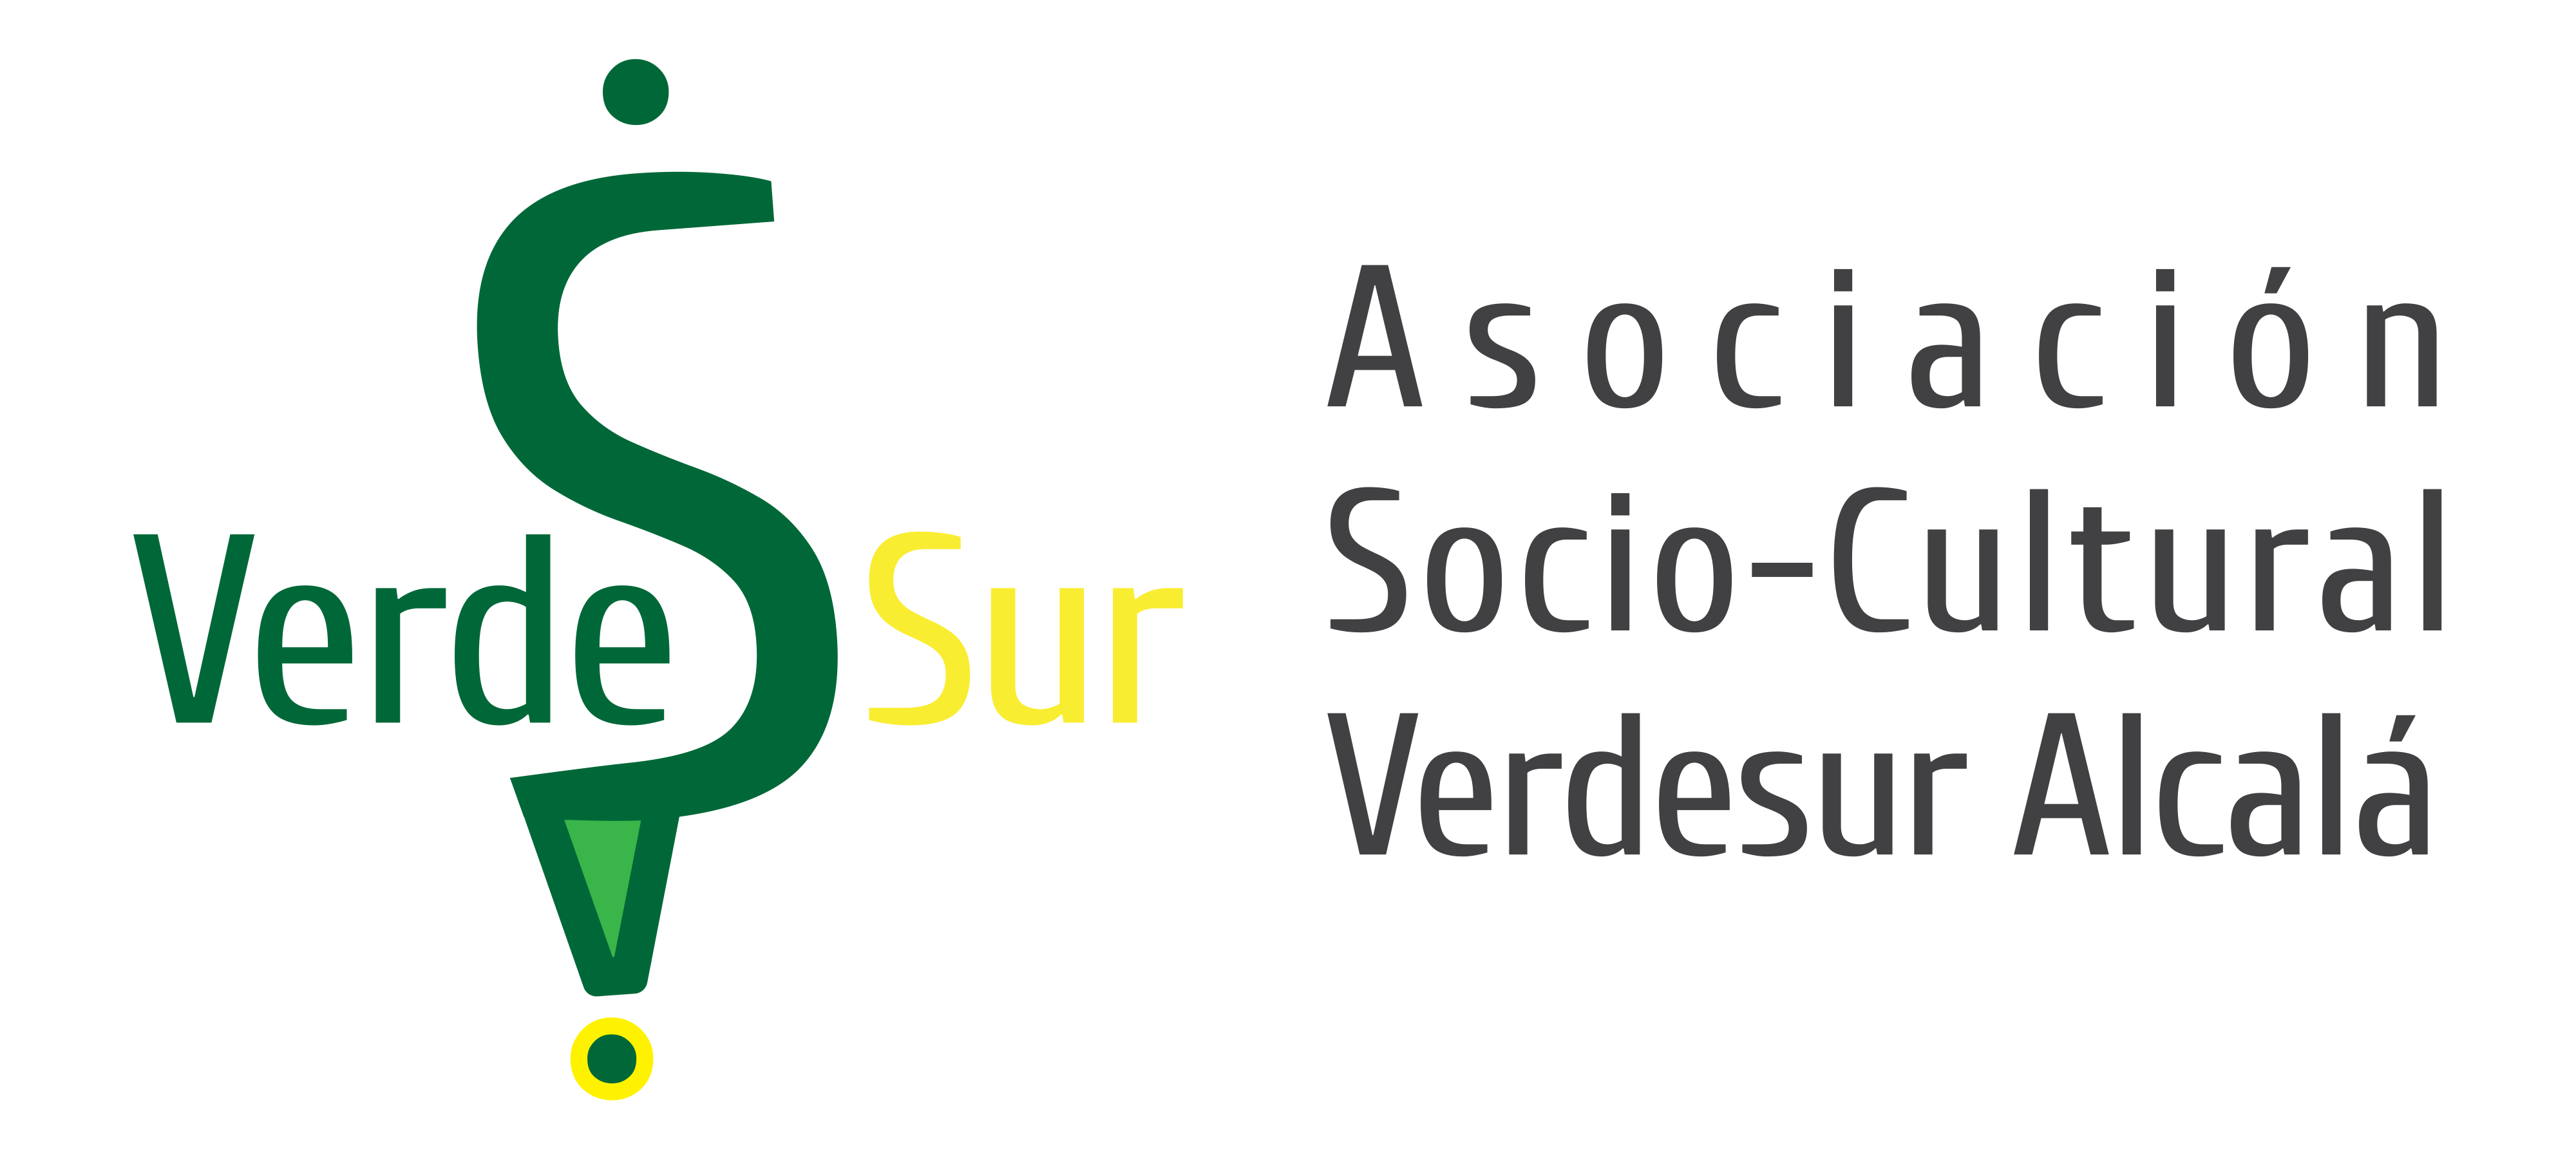 Asociación Socio-Cultural VerdeSur Alcalá